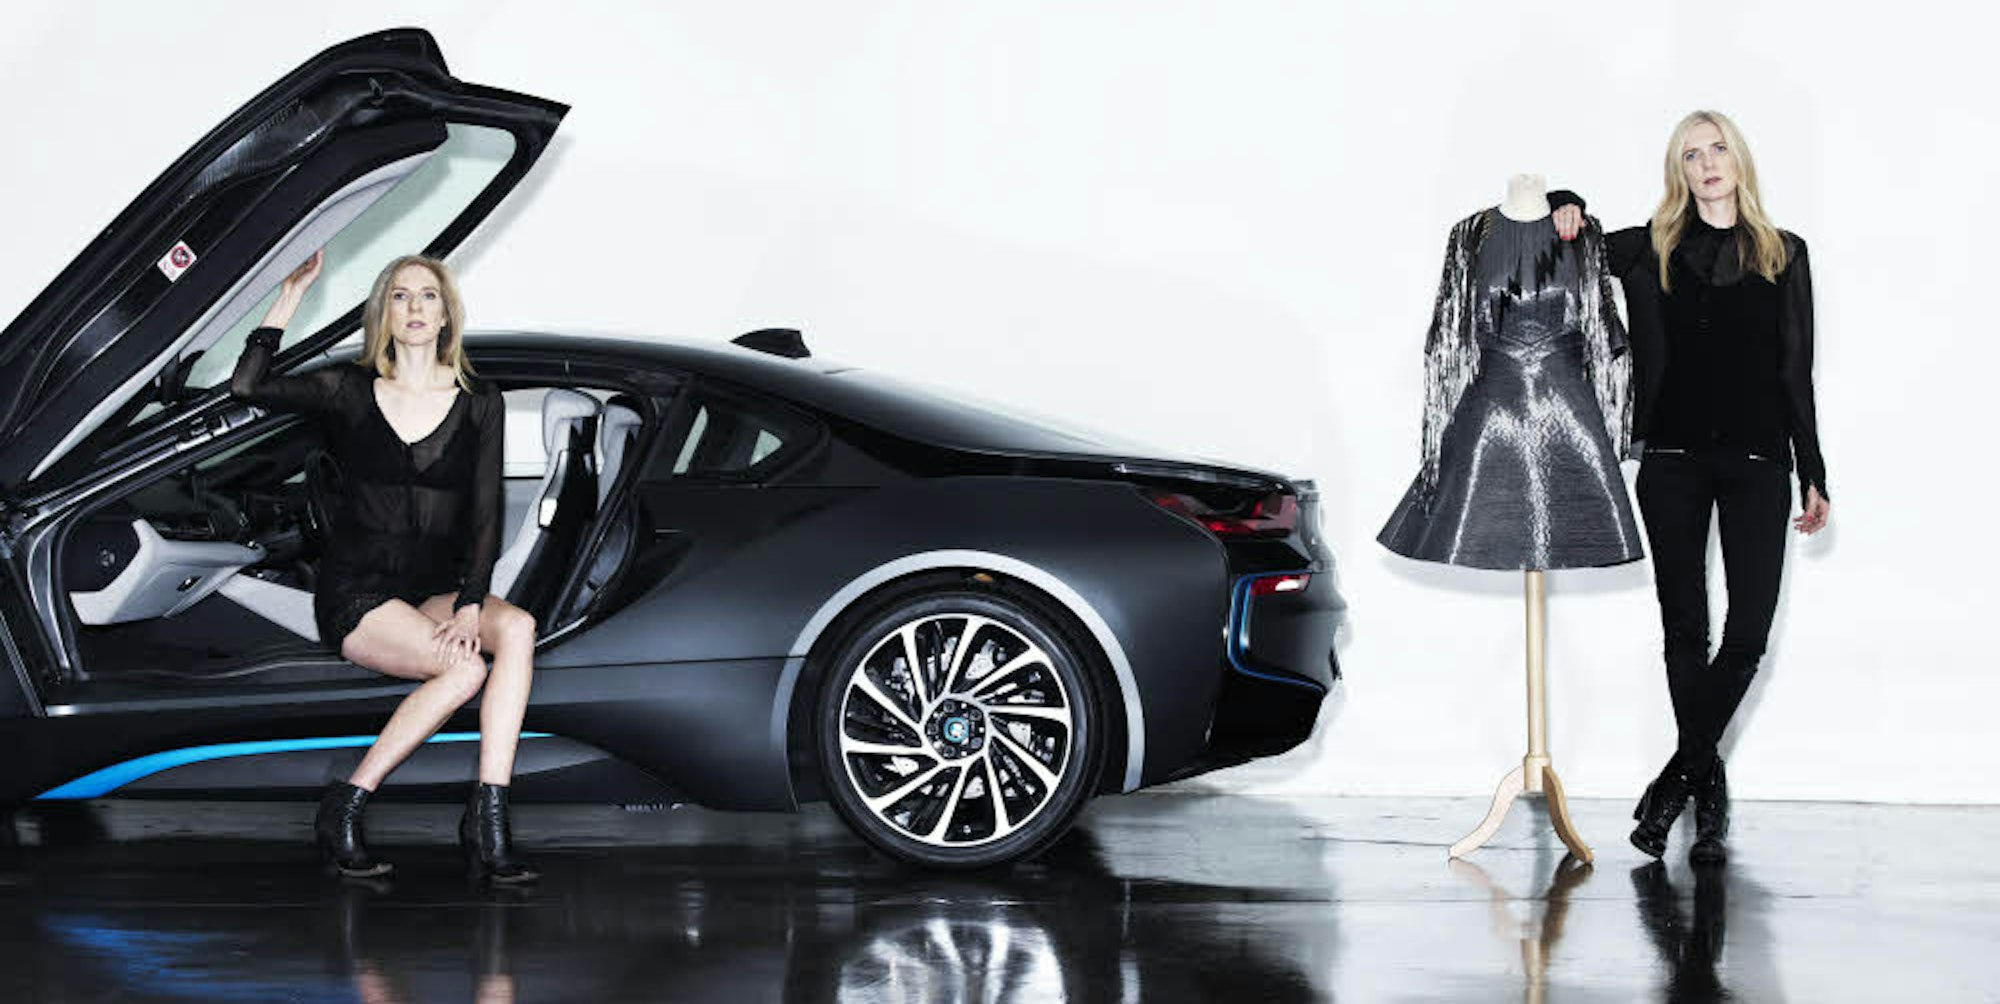 Gemeinsame PR-Aktion von BMW und Felder Felder. Für den bayerischen Autohersteller entwarfen die Zwillingsschwestern Annette und Daniela Felder ein Kleid aus Carbon, ein Material, das auch in den elektrisch betriebenen I-Baureihe zum Einsatz kommt.